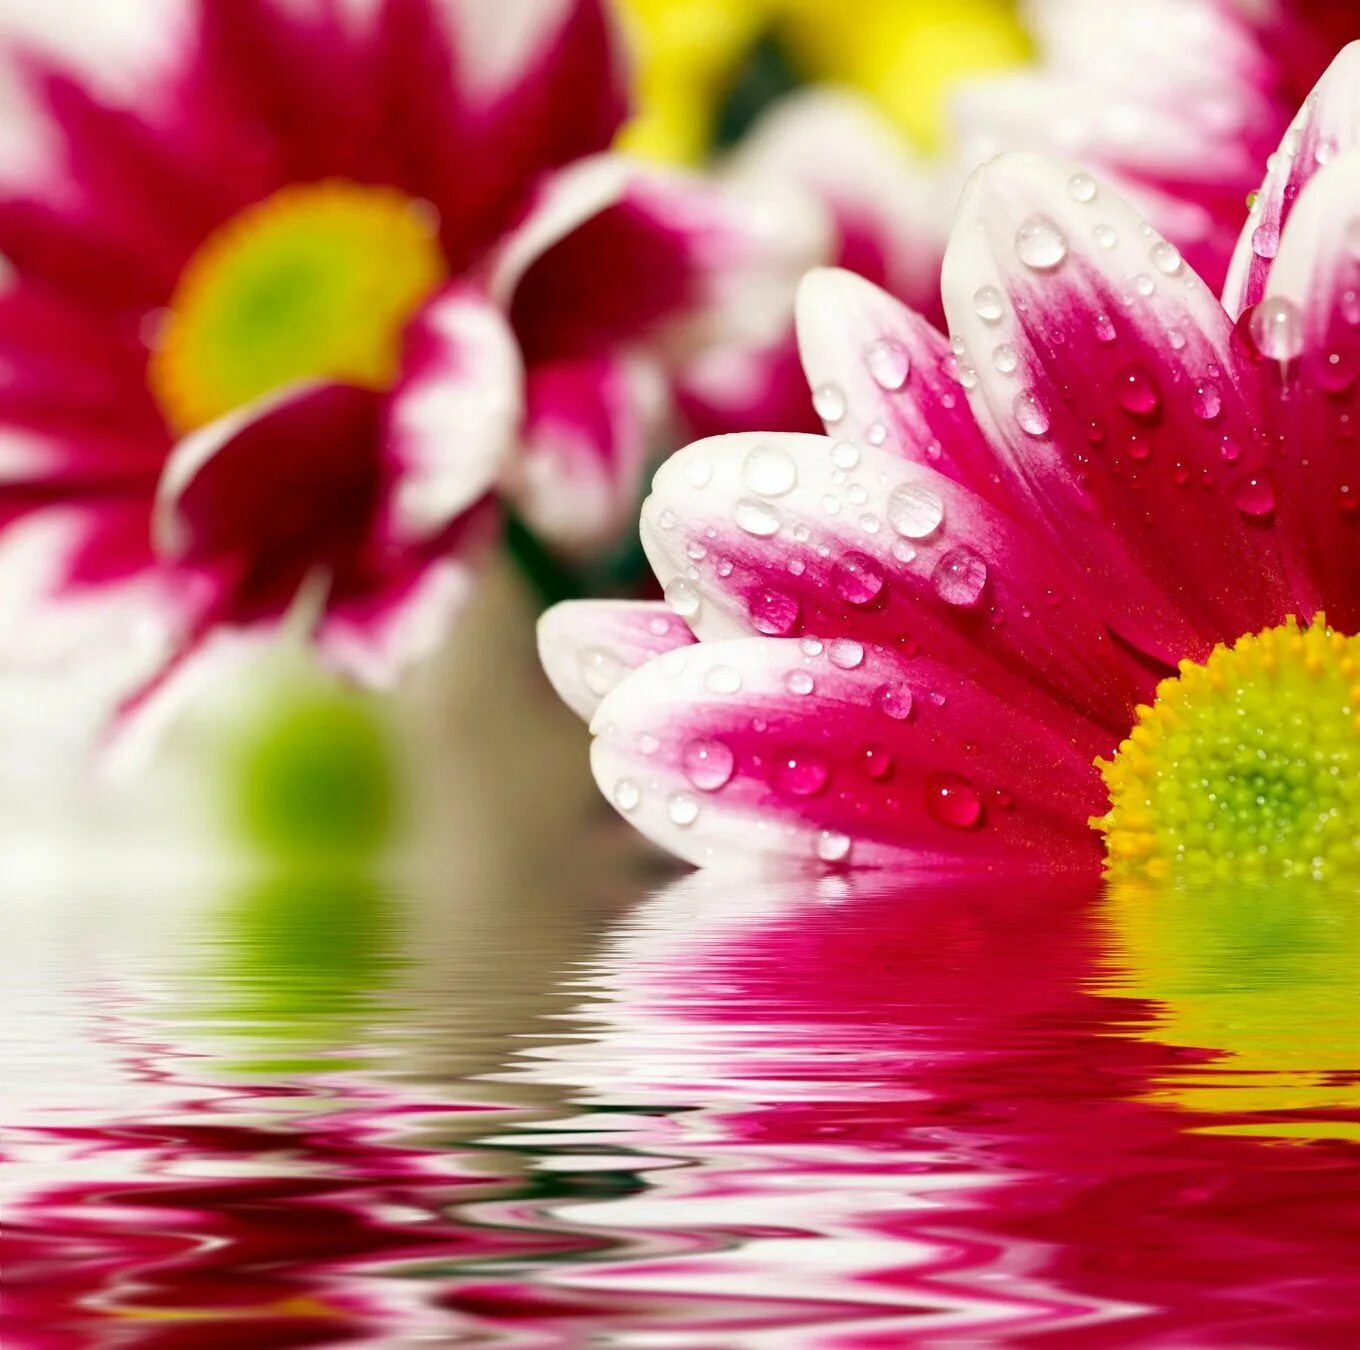 Открытки хорошего дня. Пожелания удачного дня. Красивые пожелания хорошего дня. Яркие цветы в воде.